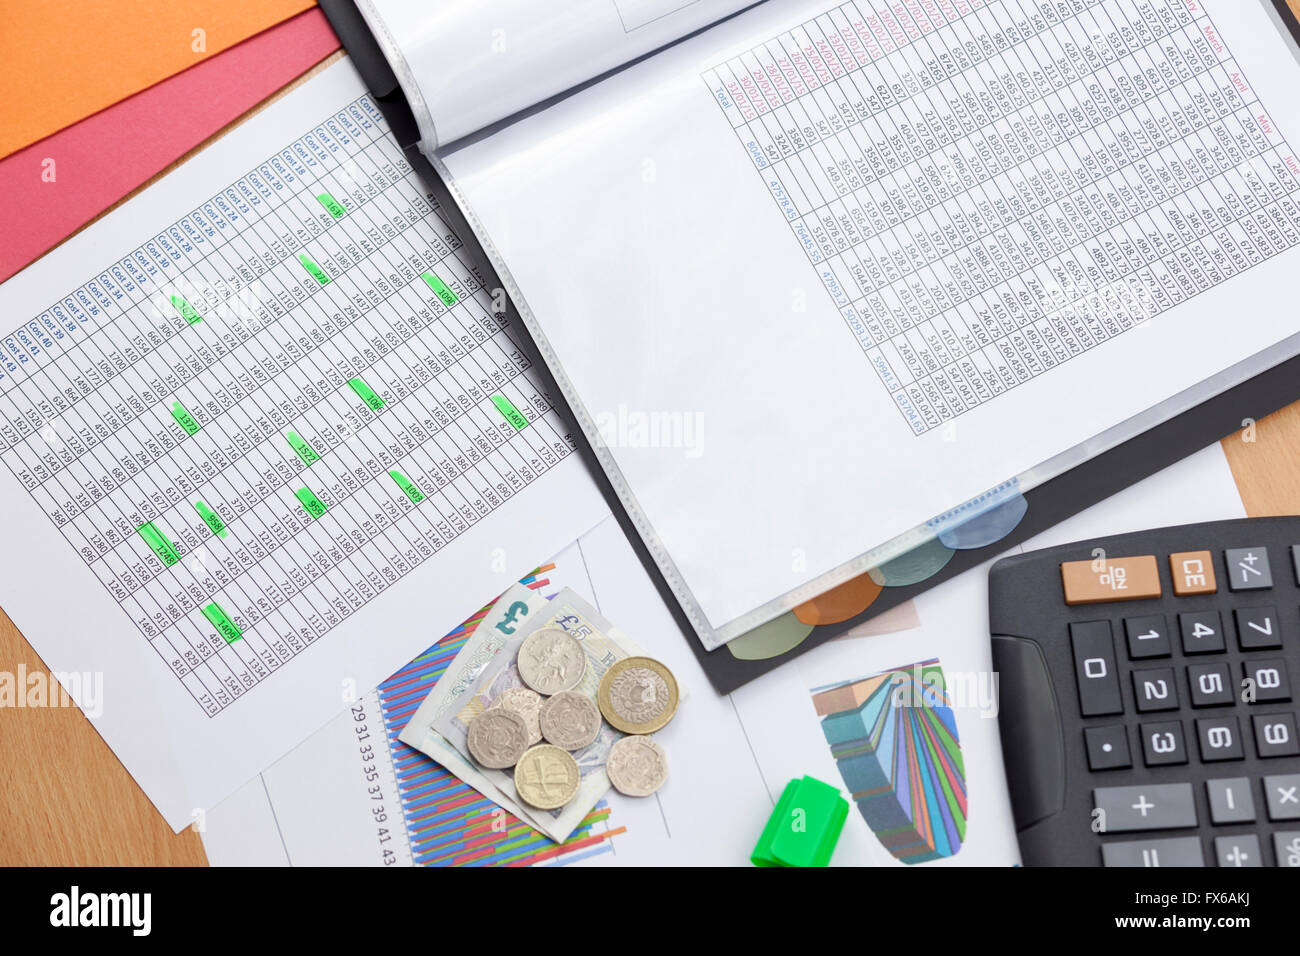 Finanziers desktop zeigt zwei Berichte über die Verkäufe mit einem Taschenrechner und Bargeld lose Verlegung auf einem Diagramm Ausdruck beschäftigt Stockfoto